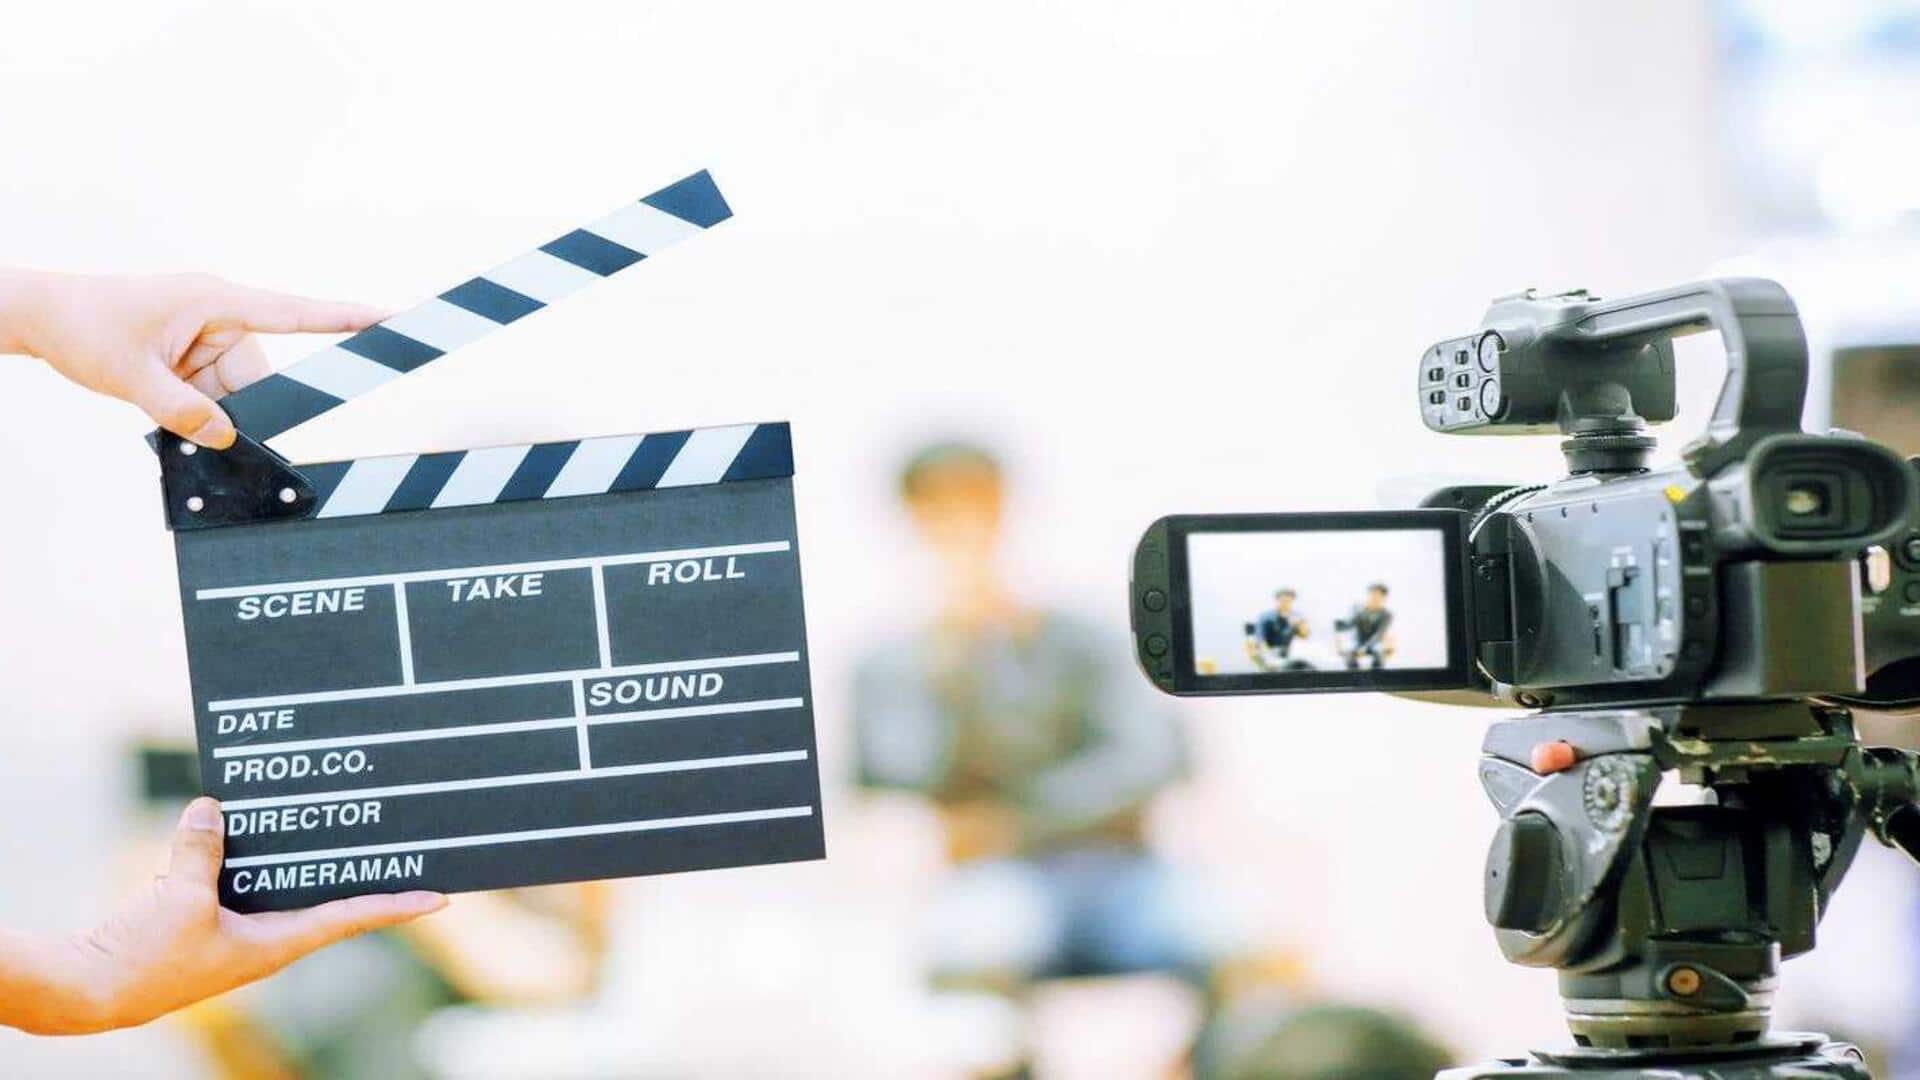 #NewsBytesExplainer: फिल्म की शूटिंग से पहले क्या होता है? जानिए पर्दे के पीछे की तैयारी